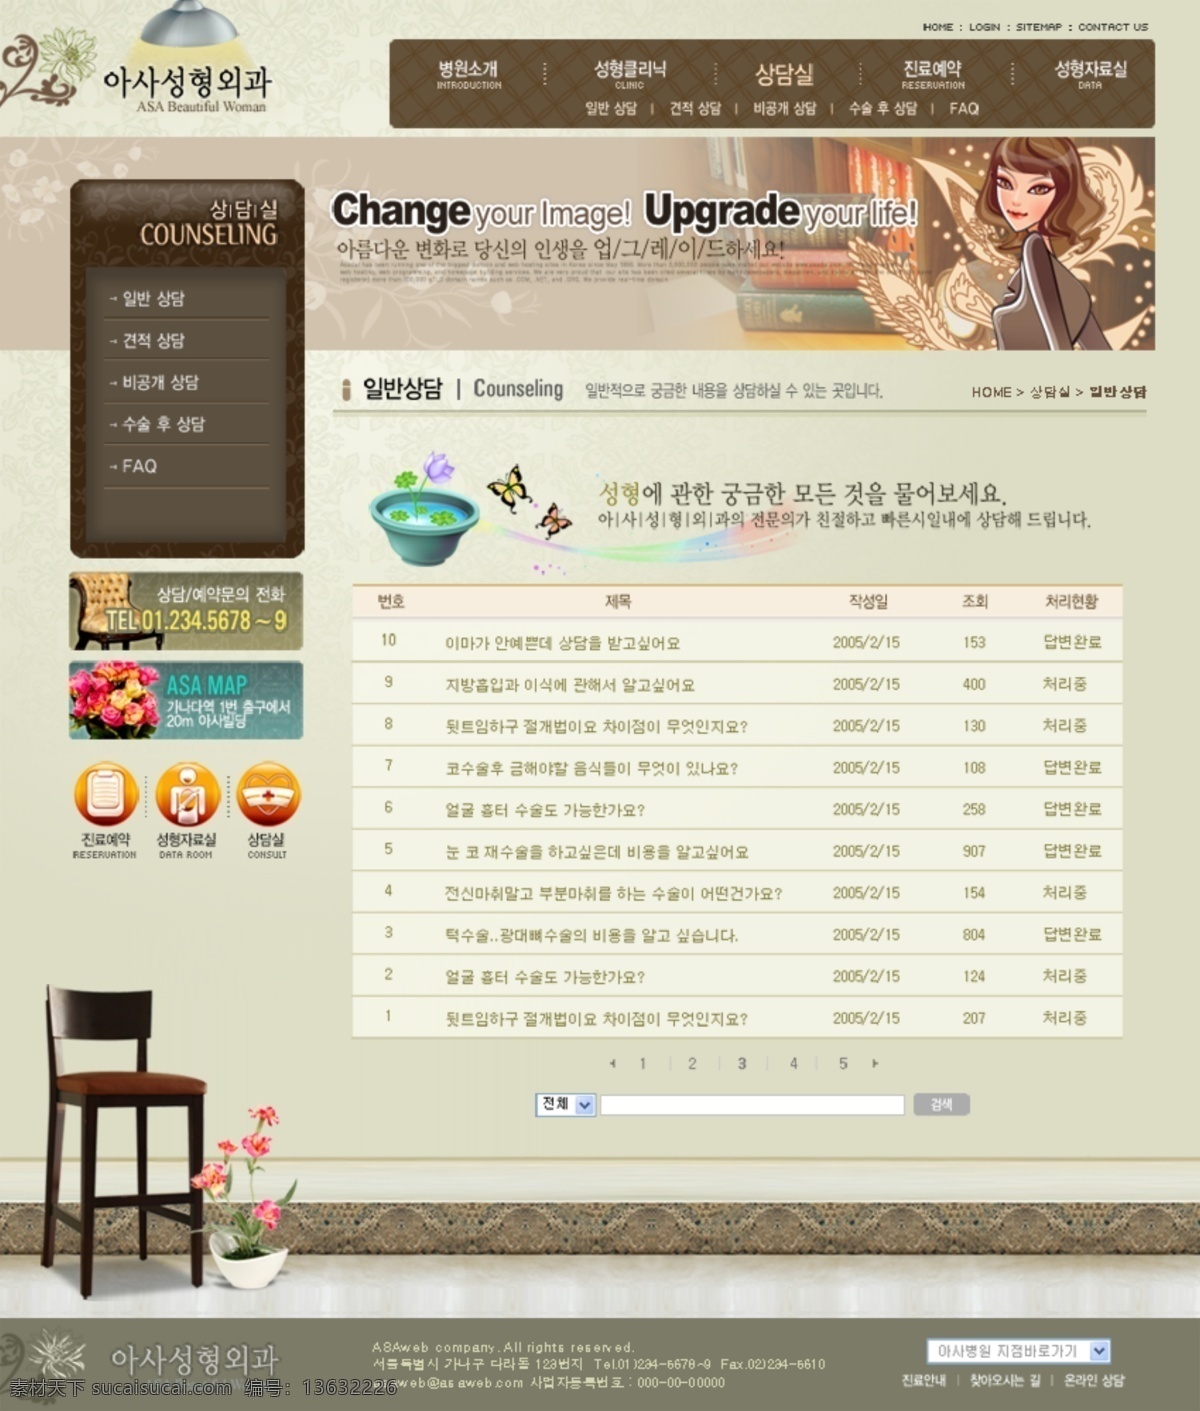 分层 背景素材 韩国模板 网页模板 源文件库 女性 减肥 咨询公司 网页素材 网页